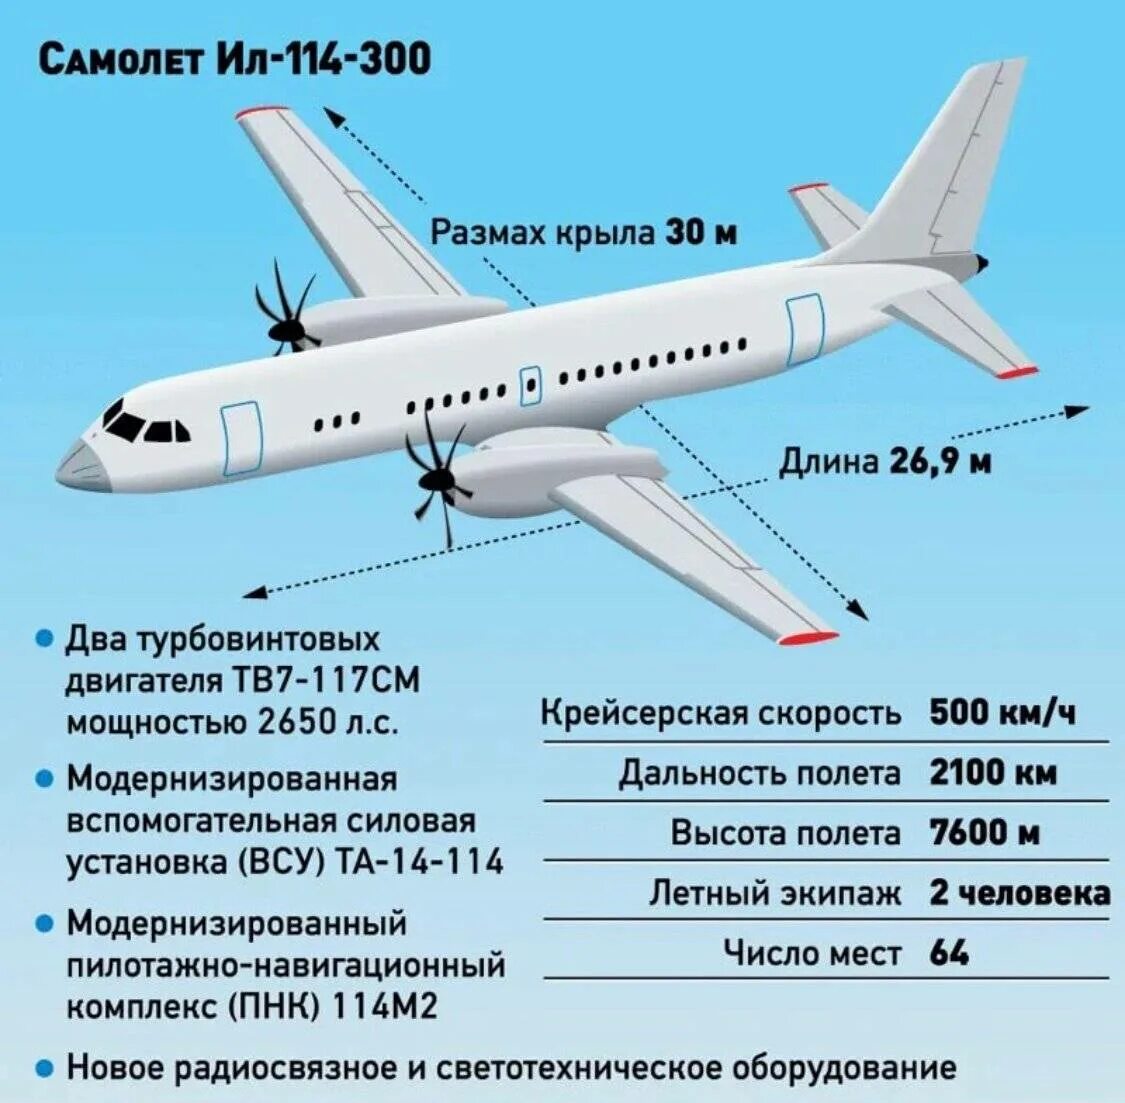 Ил-114-300. Ил 114 габариты. Ил-114-300 характеристики технические самолета. Ил 114 300 крыло.